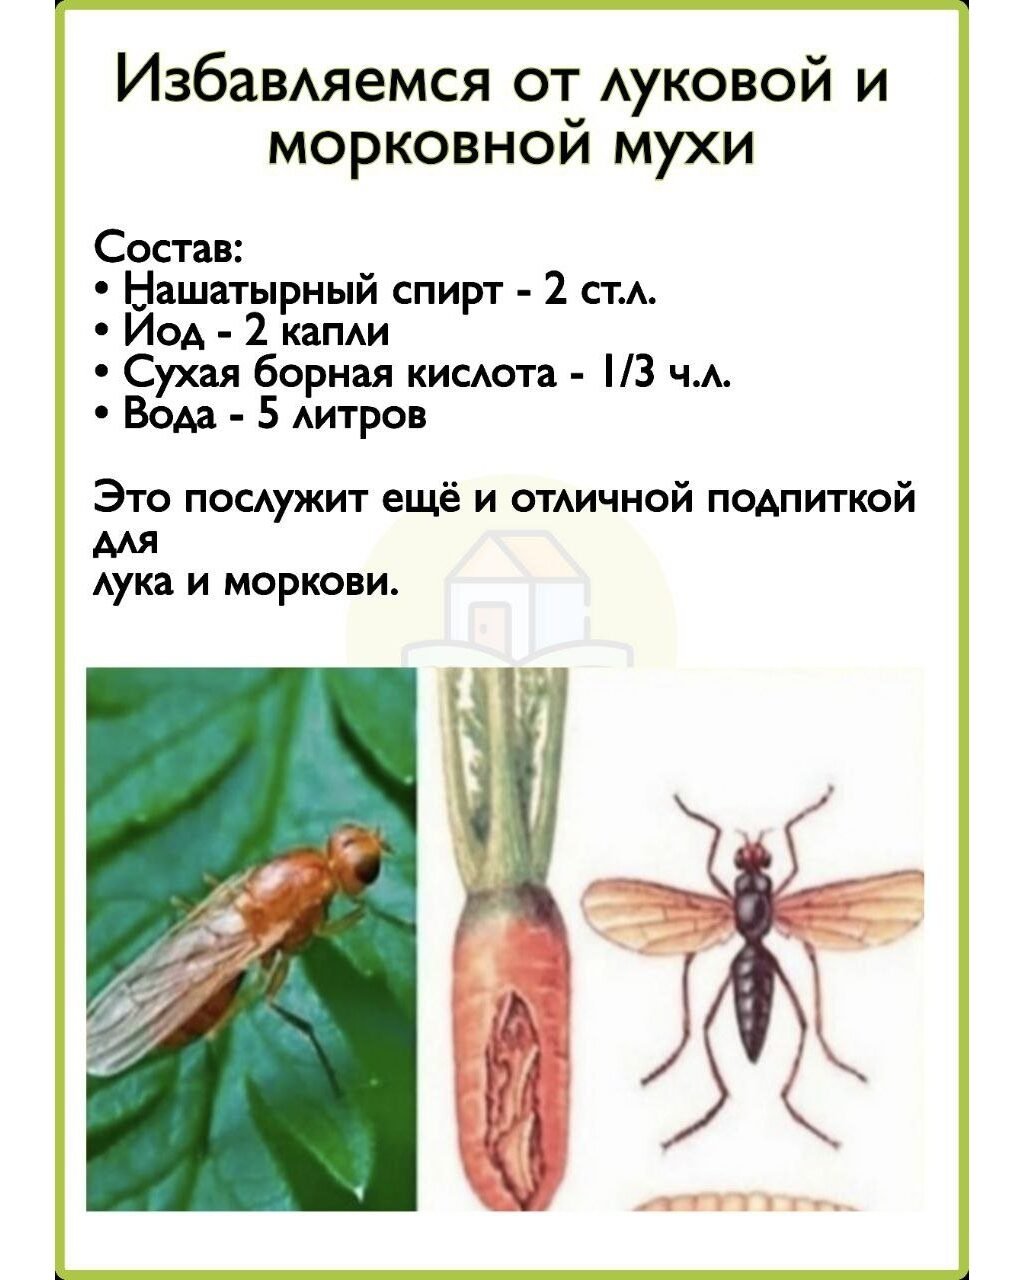 Луковая и морковная муха